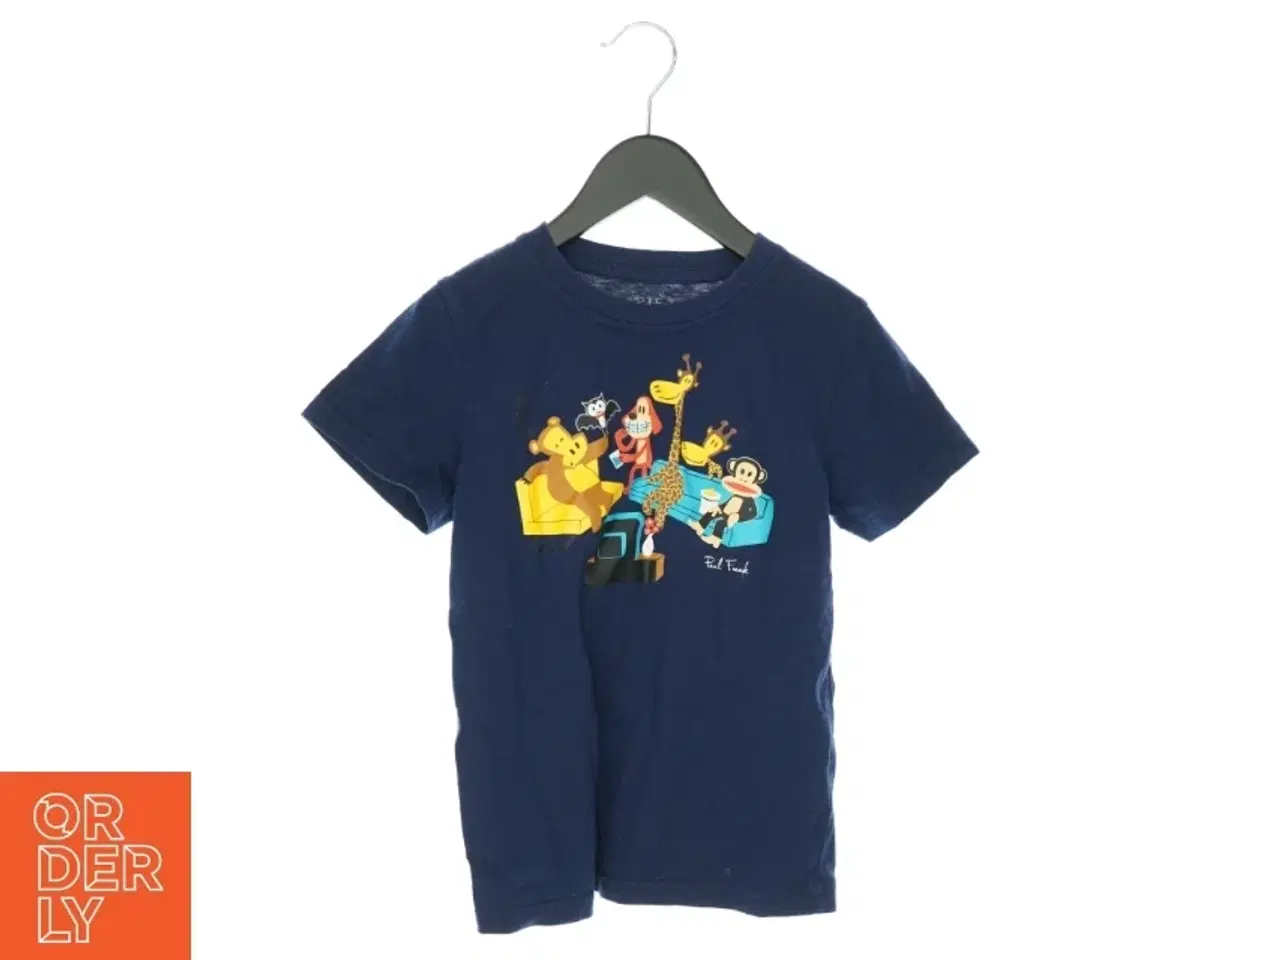 Billede 1 - T-shirt fra Poul Frank